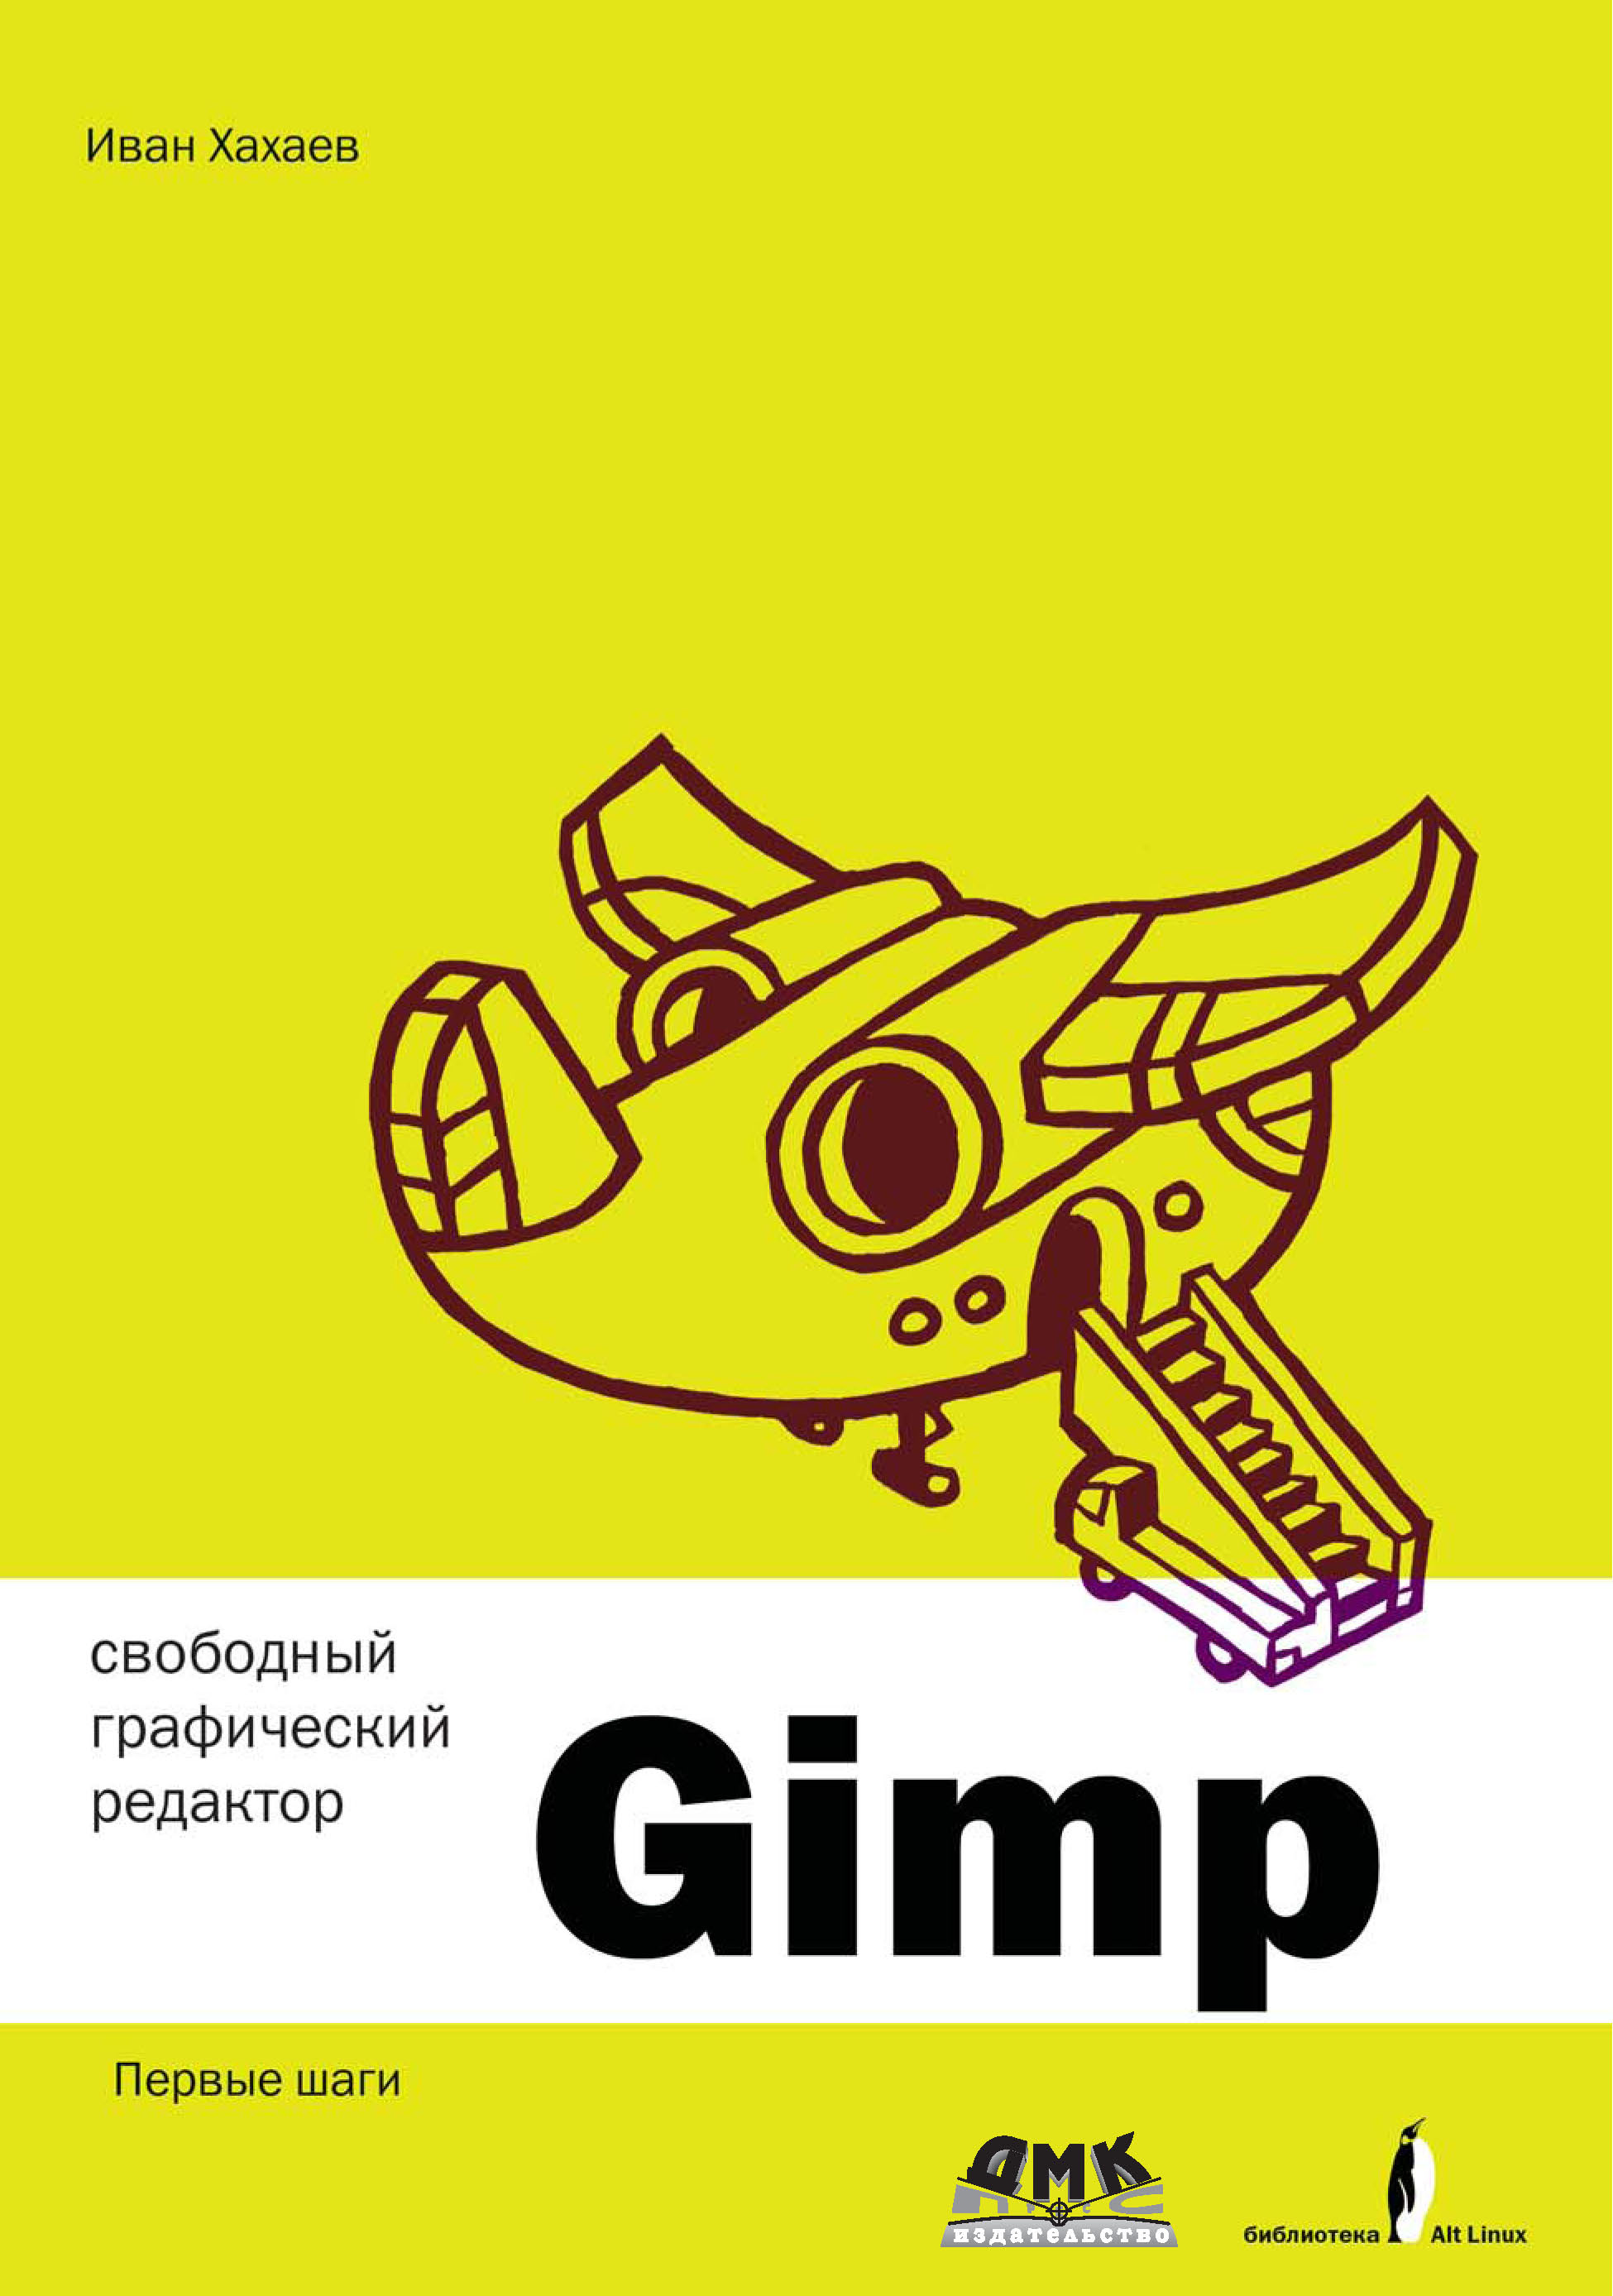 Книга Библиотека ALT Linux (ДМК Пресс) Свободный графический редактор GIMP: первые шаги созданная И. А. Хахаев может относится к жанру программы. Стоимость электронной книги Свободный графический редактор GIMP: первые шаги с идентификатором 6377889 составляет 199.00 руб.